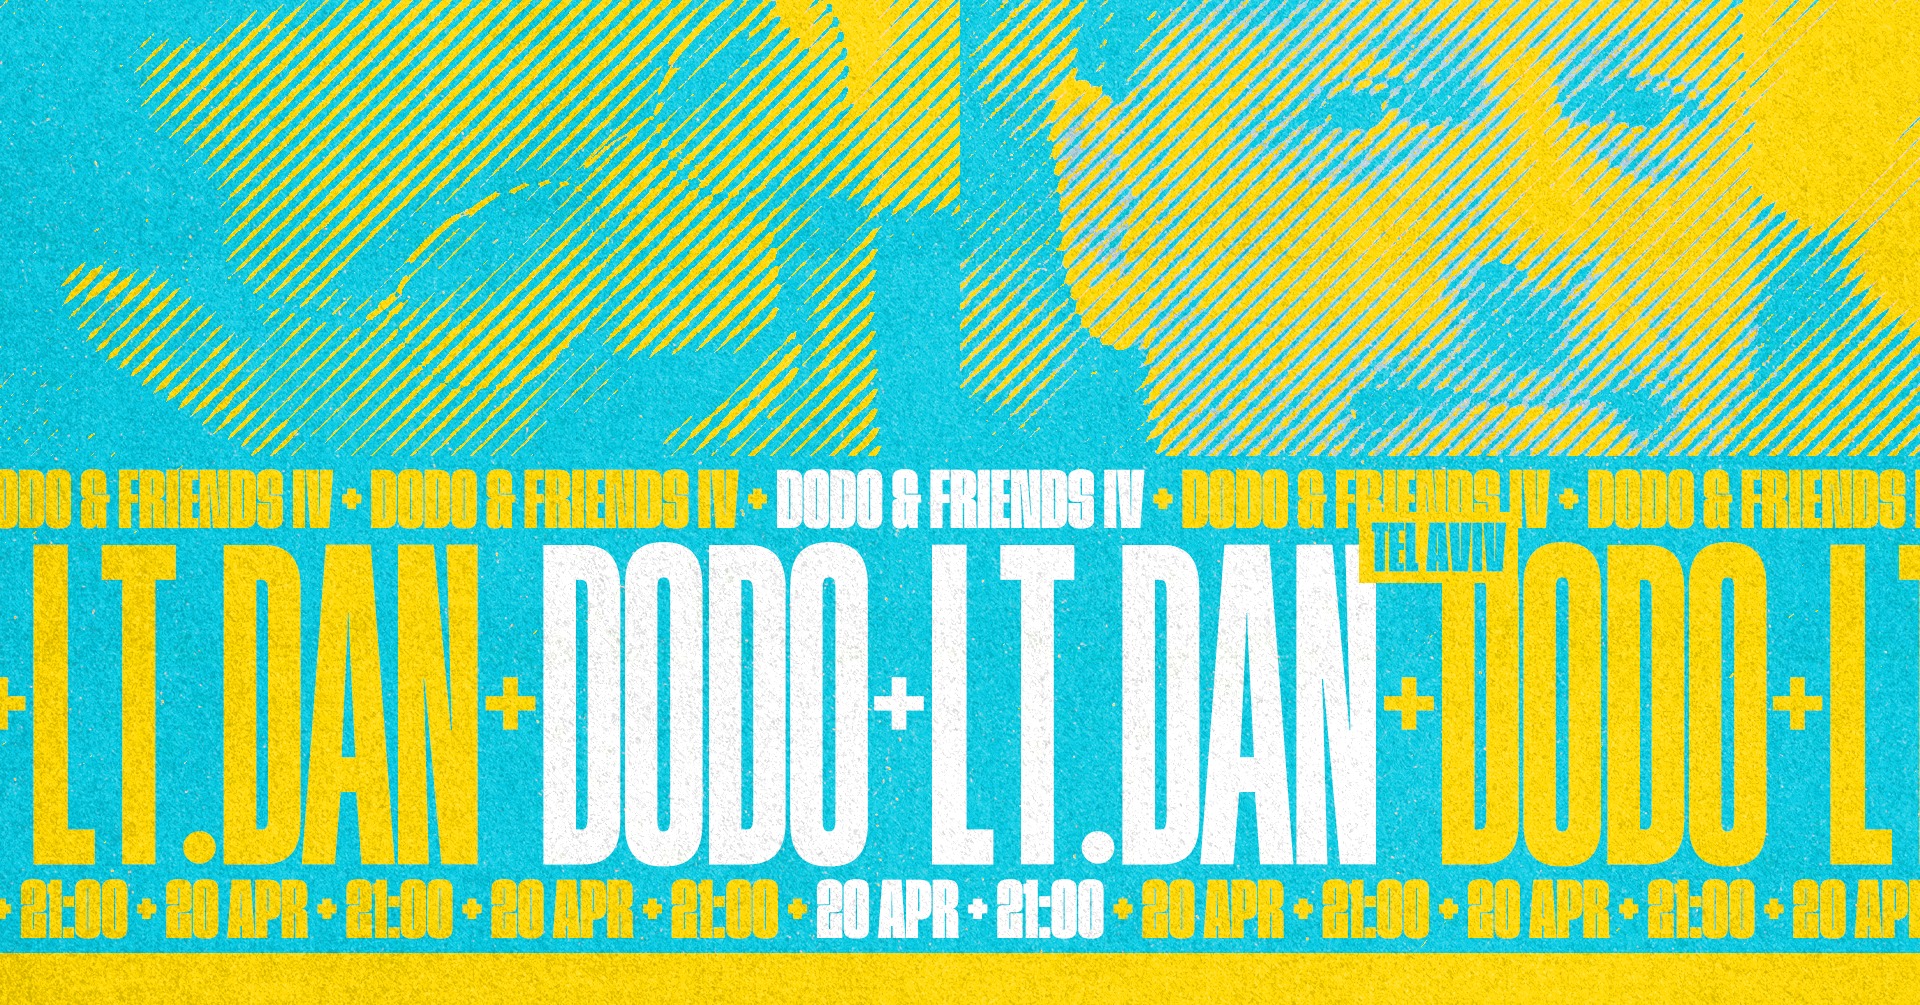 Dodo & friends IV w Lt.Dan